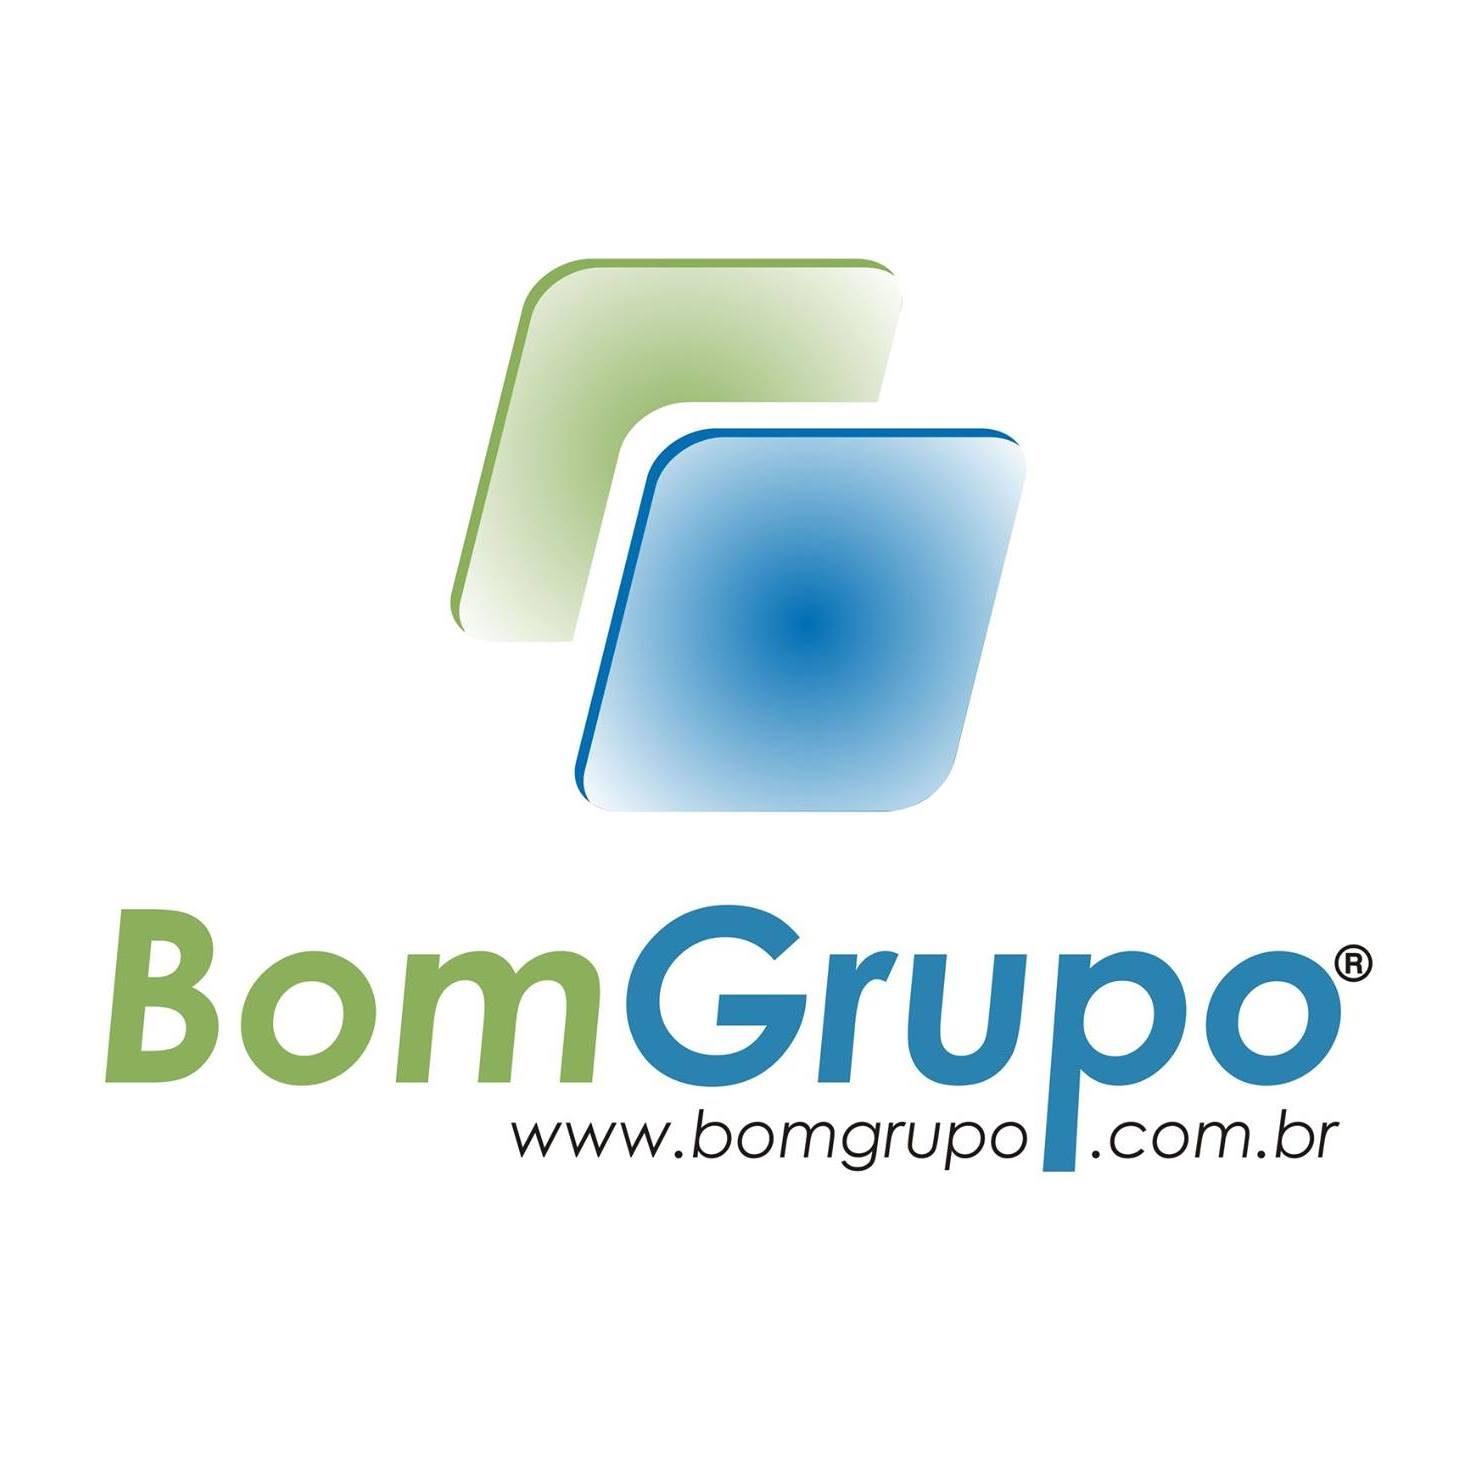 BOMGRUPO.com.br | Neg�cio Digital